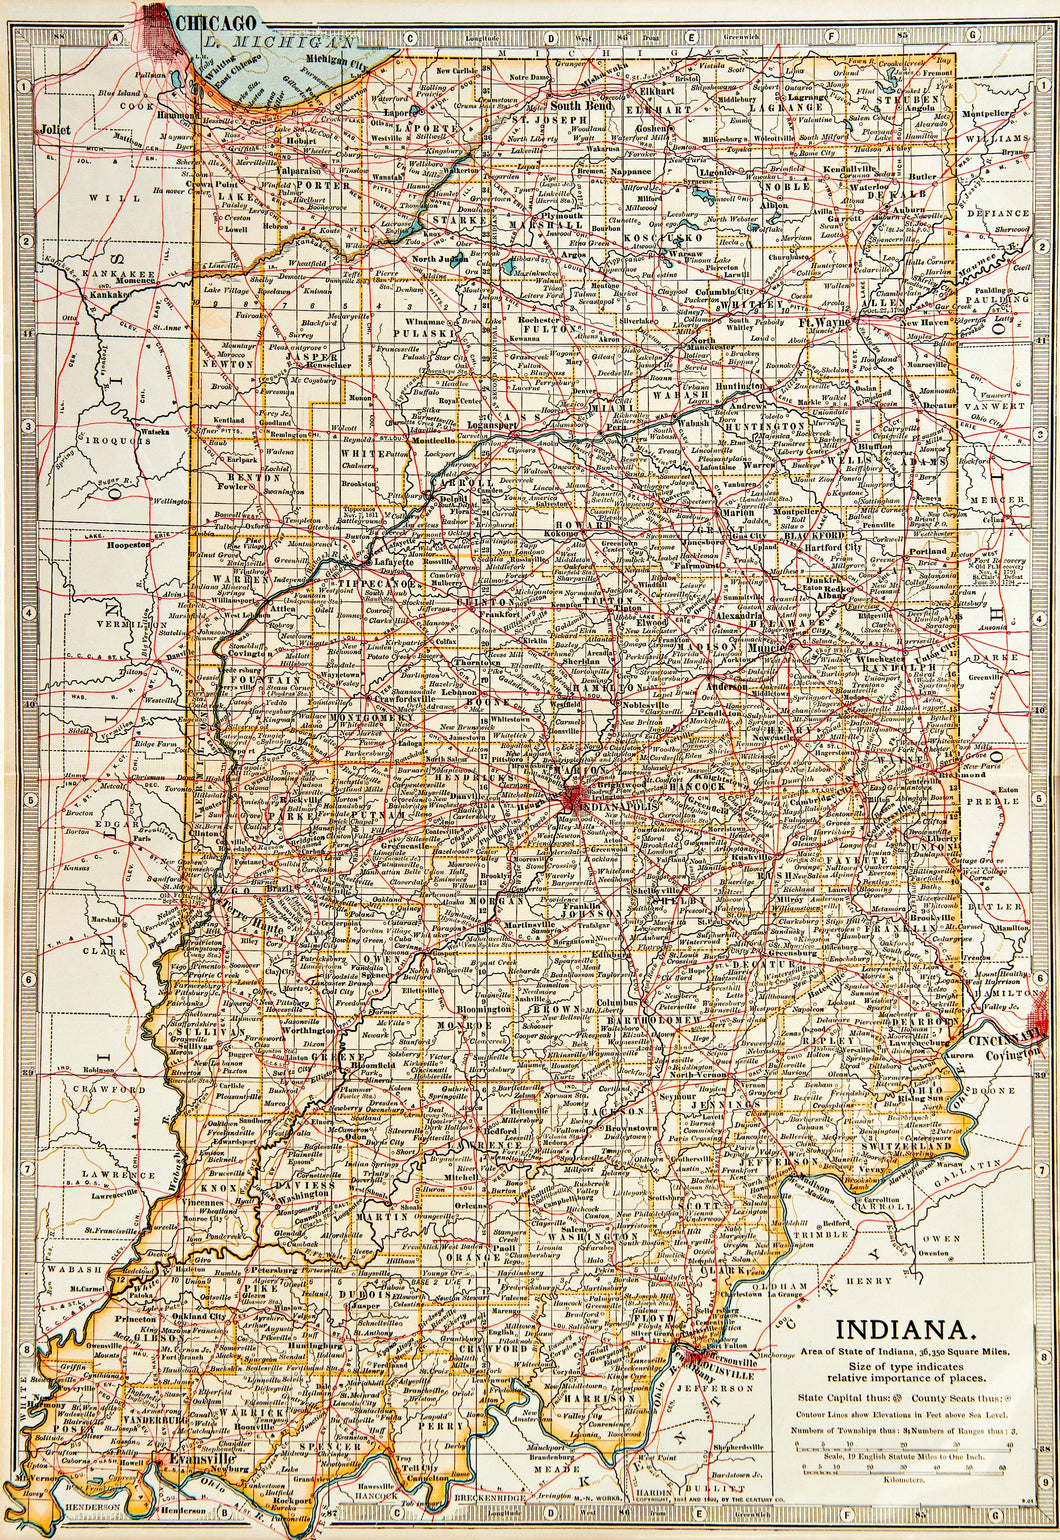 Indiana - Antique Map circa 1903